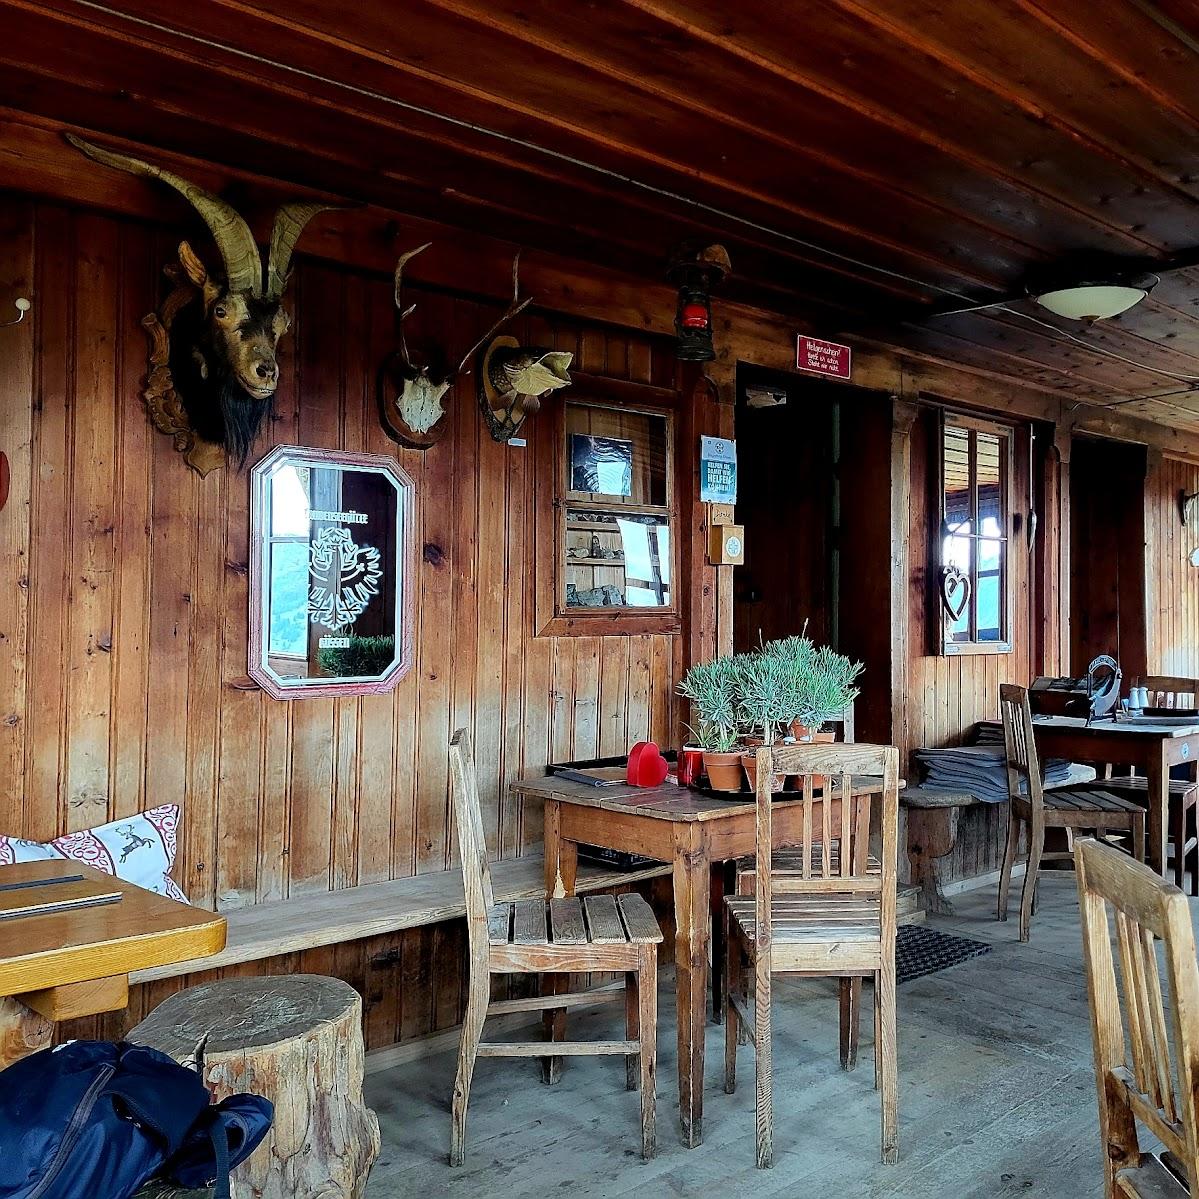 Restaurant "Taubenseehütte" in Kössen